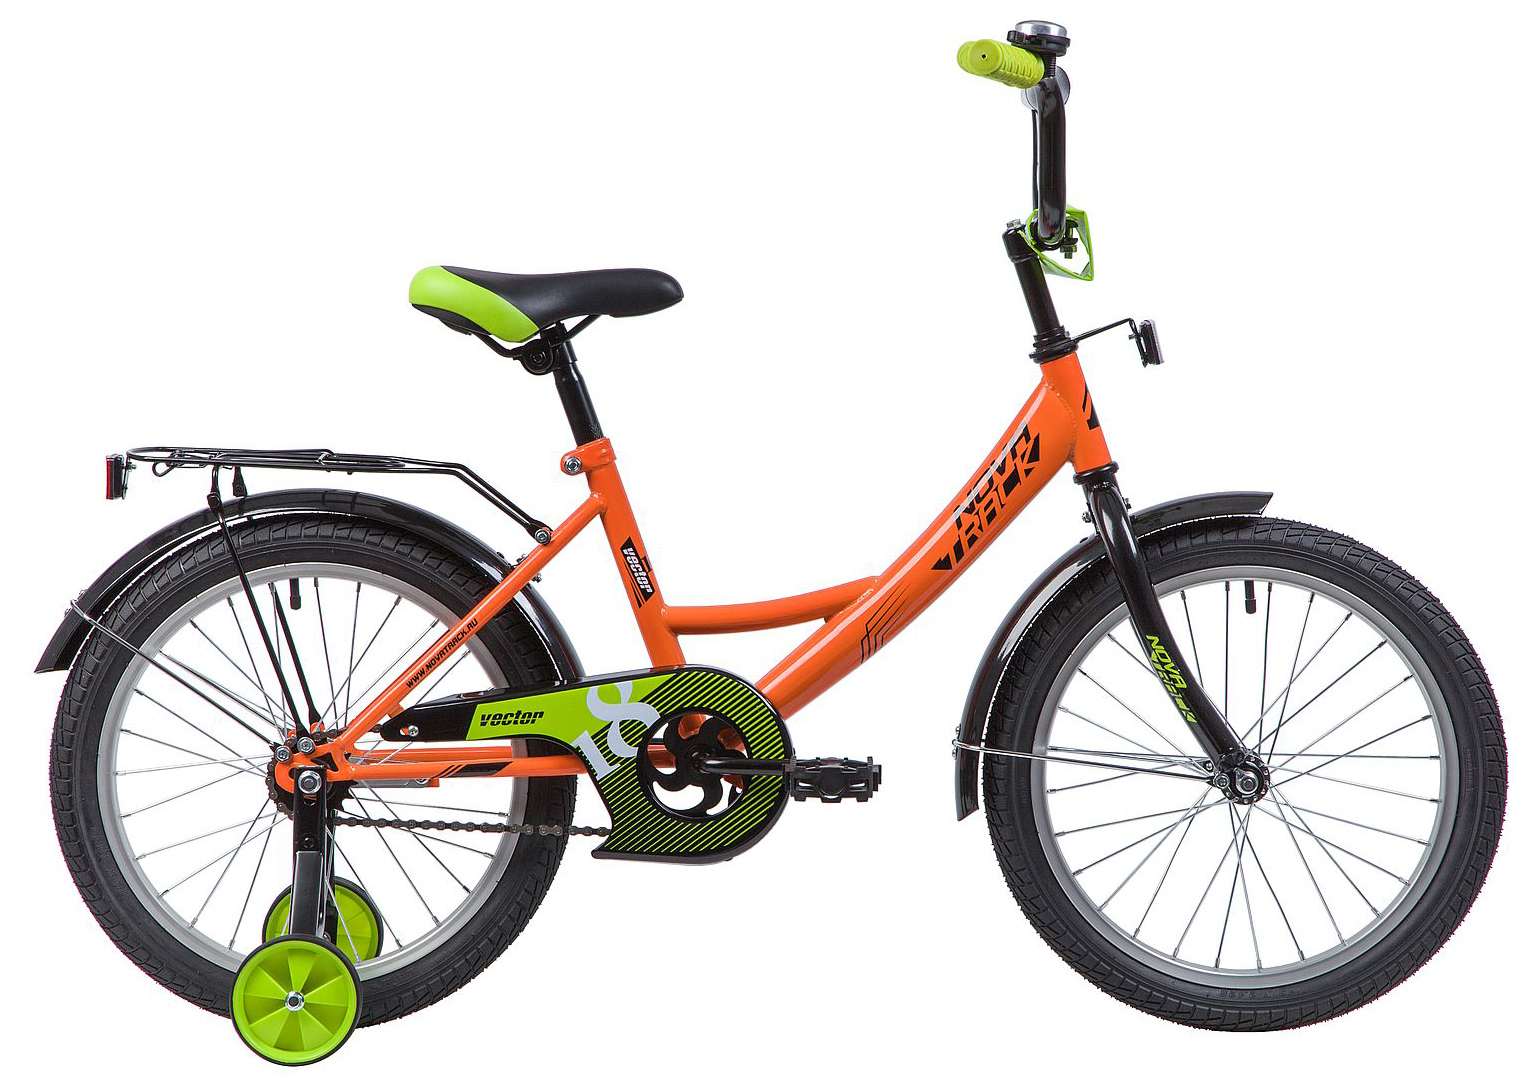  Отзывы о Детском велосипеде Novatrack Vector 18 2022